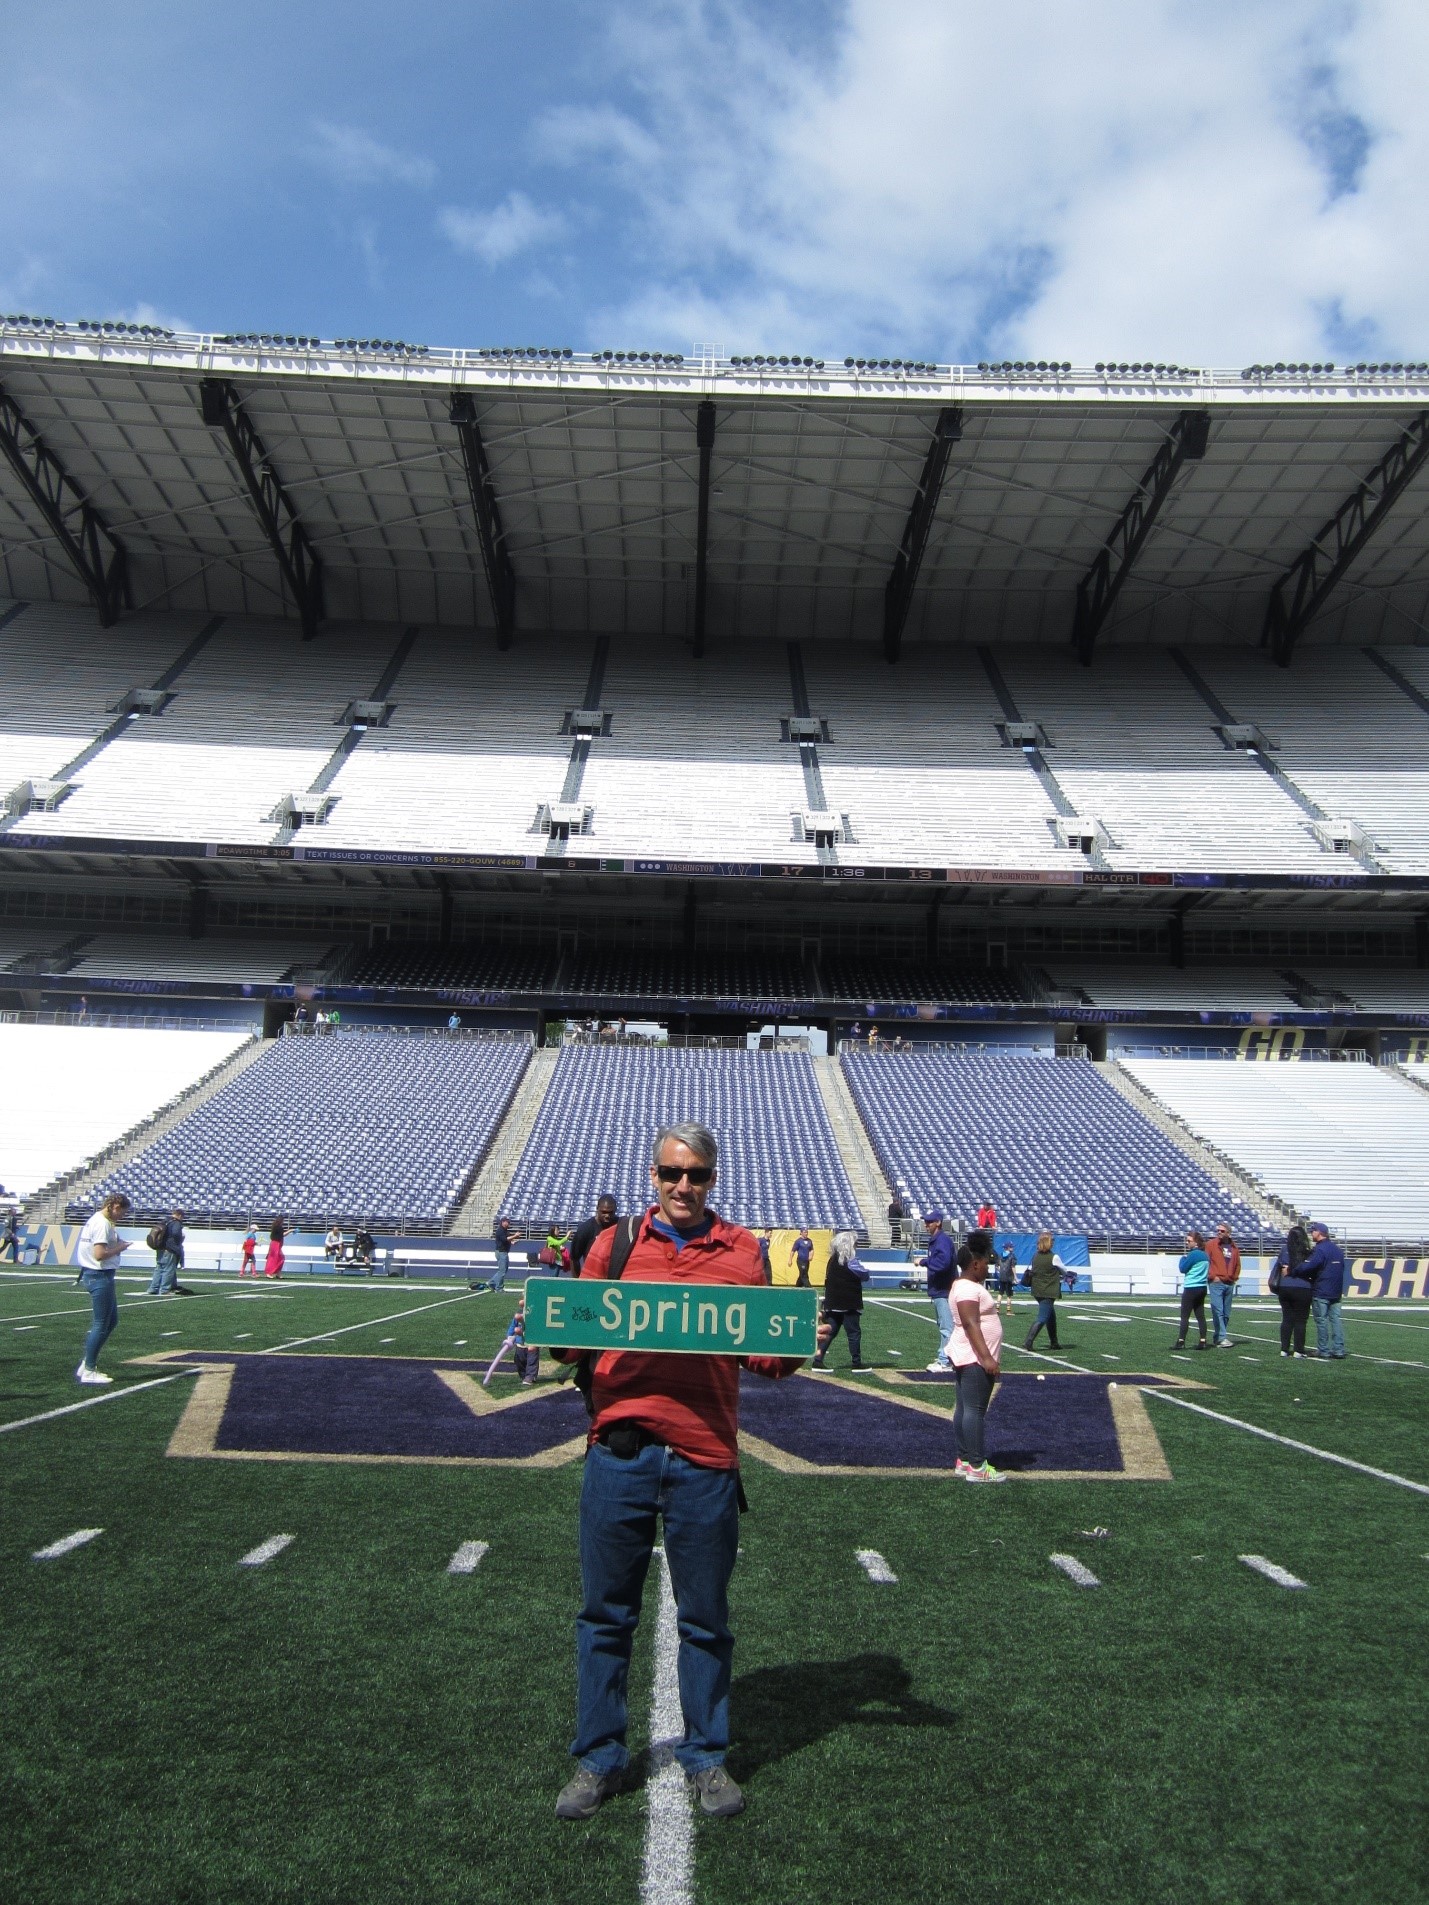 University of Washington 50-yard line